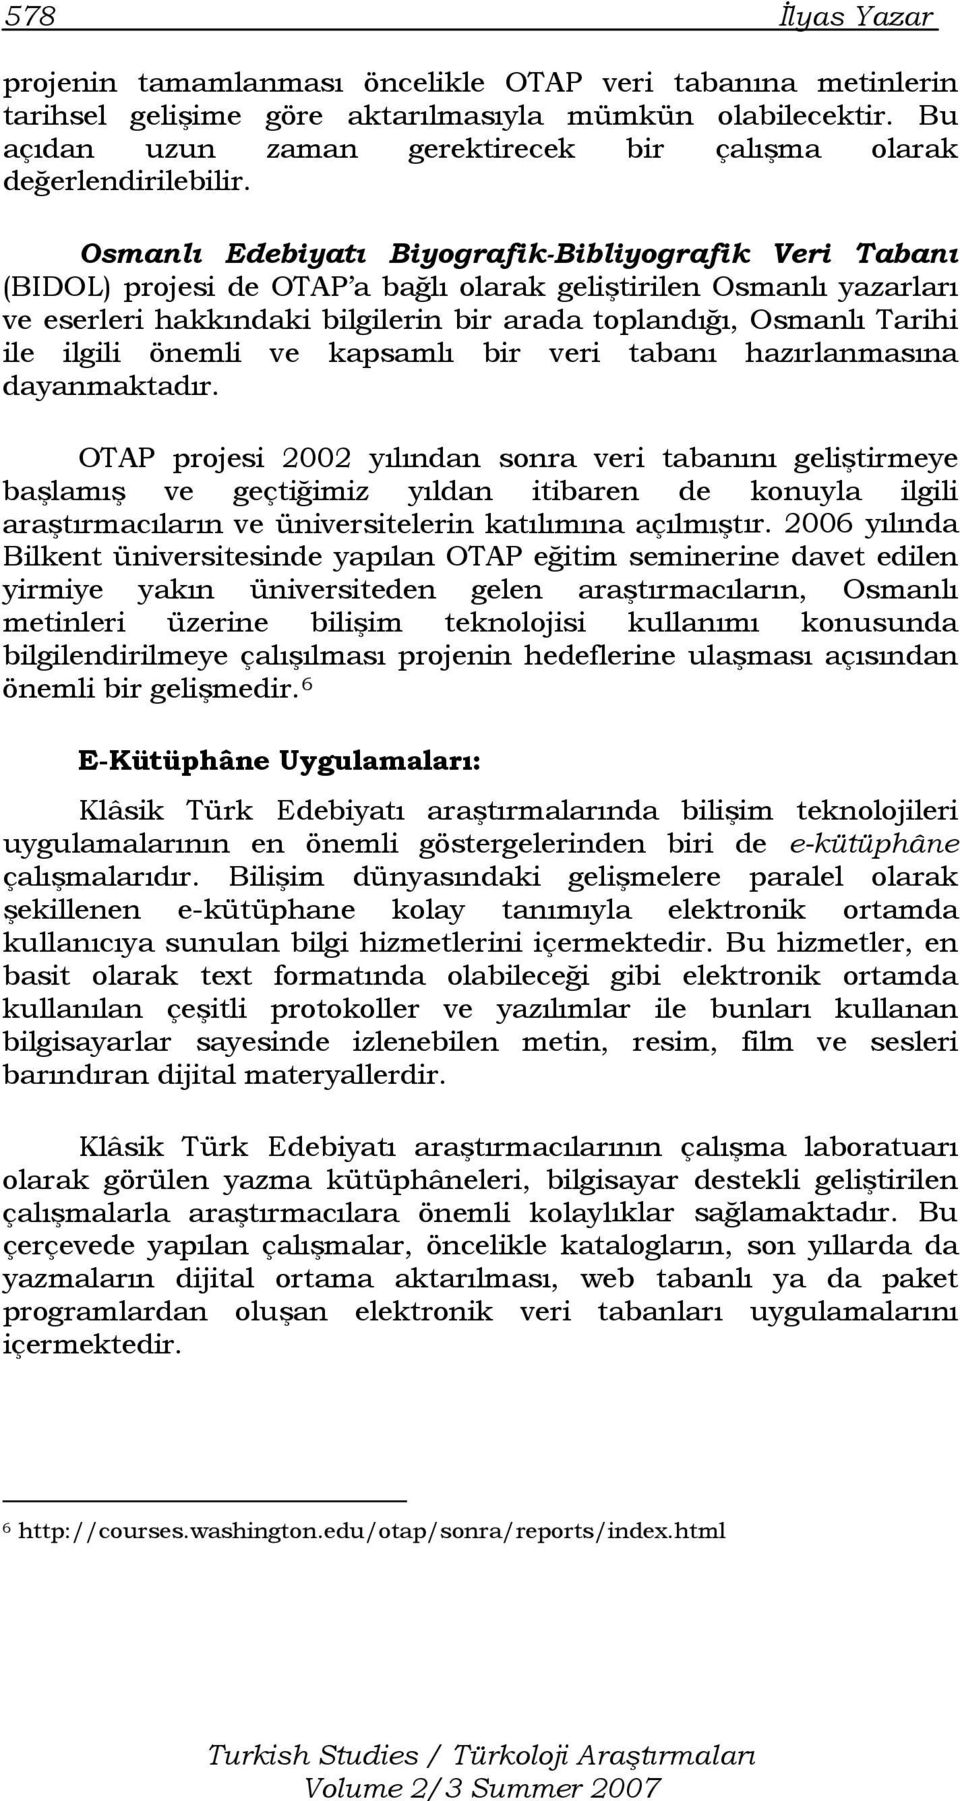 Osmanlı Edebiyatı Biyografik-Bibliyografik Veri Tabanı (BIDOL) projesi de OTAP a bağlı olarak geliştirilen Osmanlı yazarları ve eserleri hakkındaki bilgilerin bir arada toplandığı, Osmanlı Tarihi ile